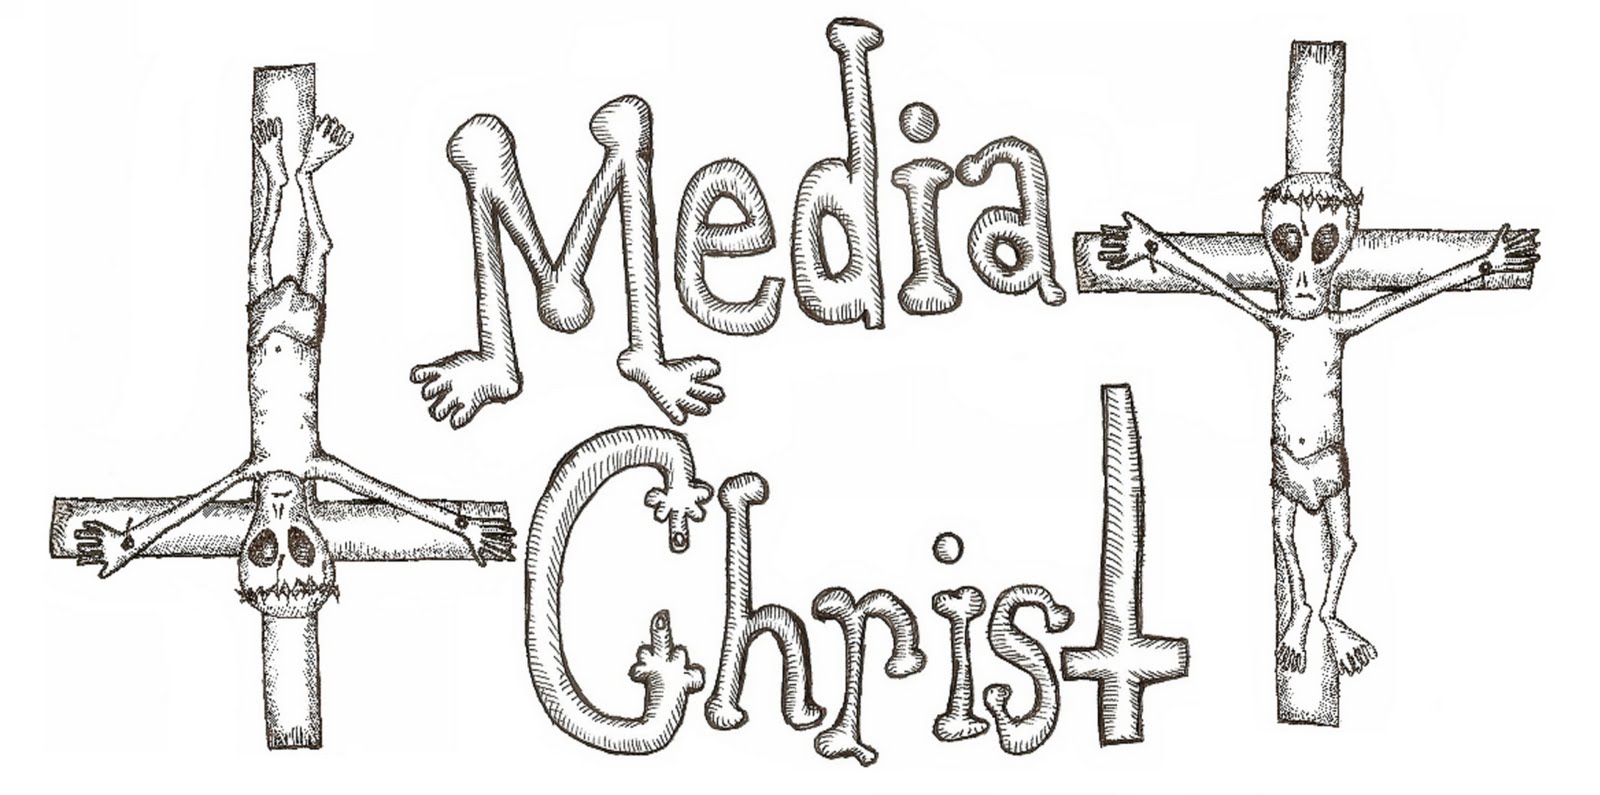 MEDIA CHRIST